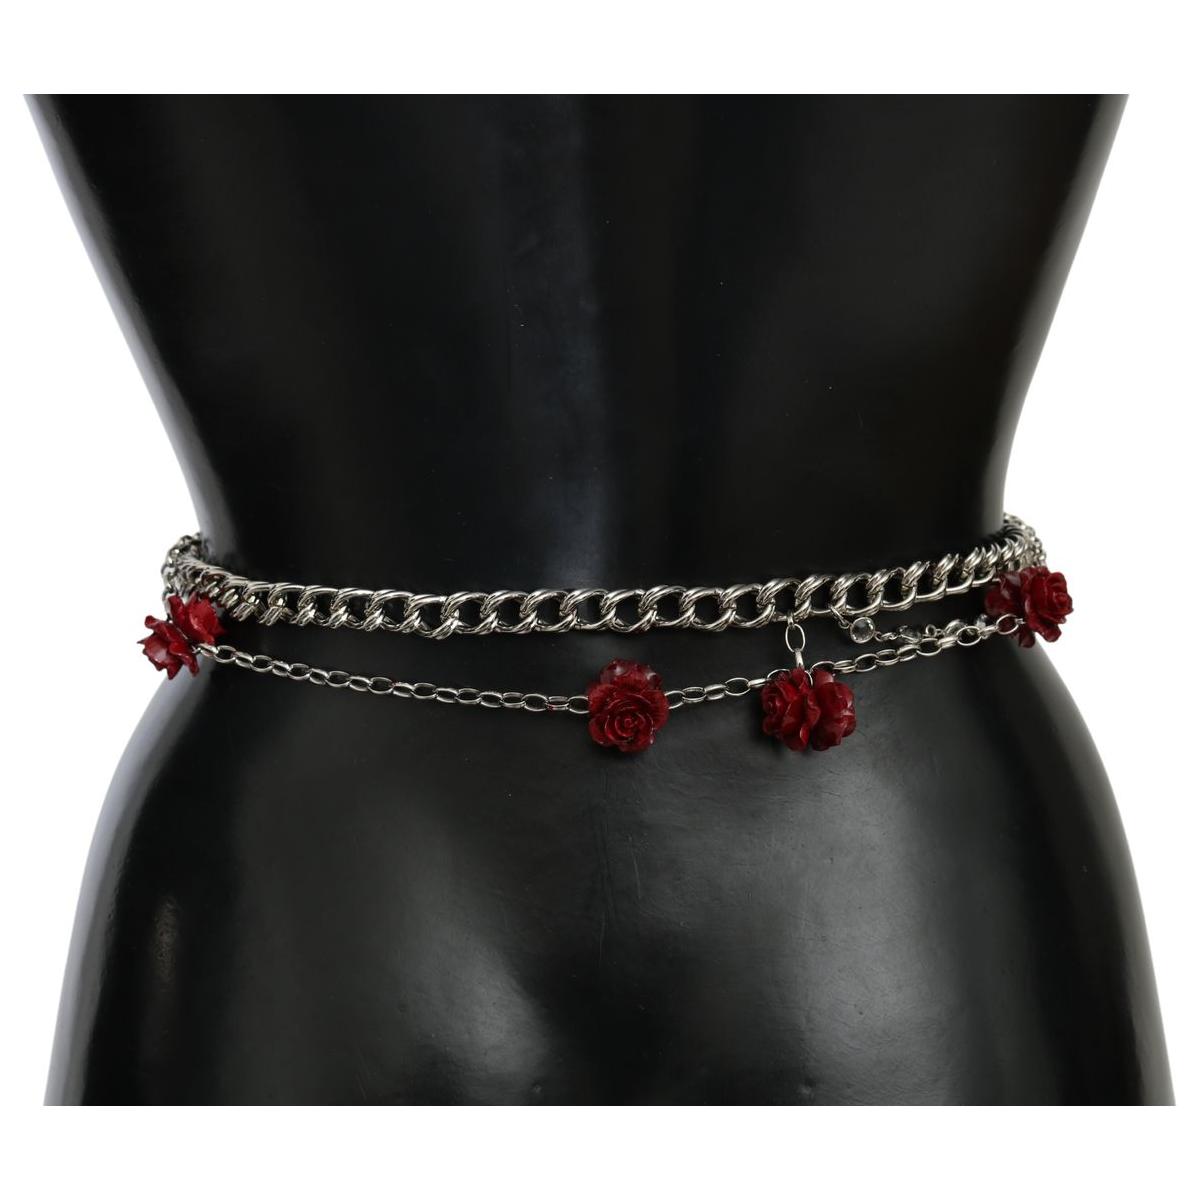 Dolce & Gabbana Elegant Floral Rose Waist Belt in Vibrant Red red-leather-roses-floral-silver-waist-belt Belt IMG_9989-fde78514-edb.jpg